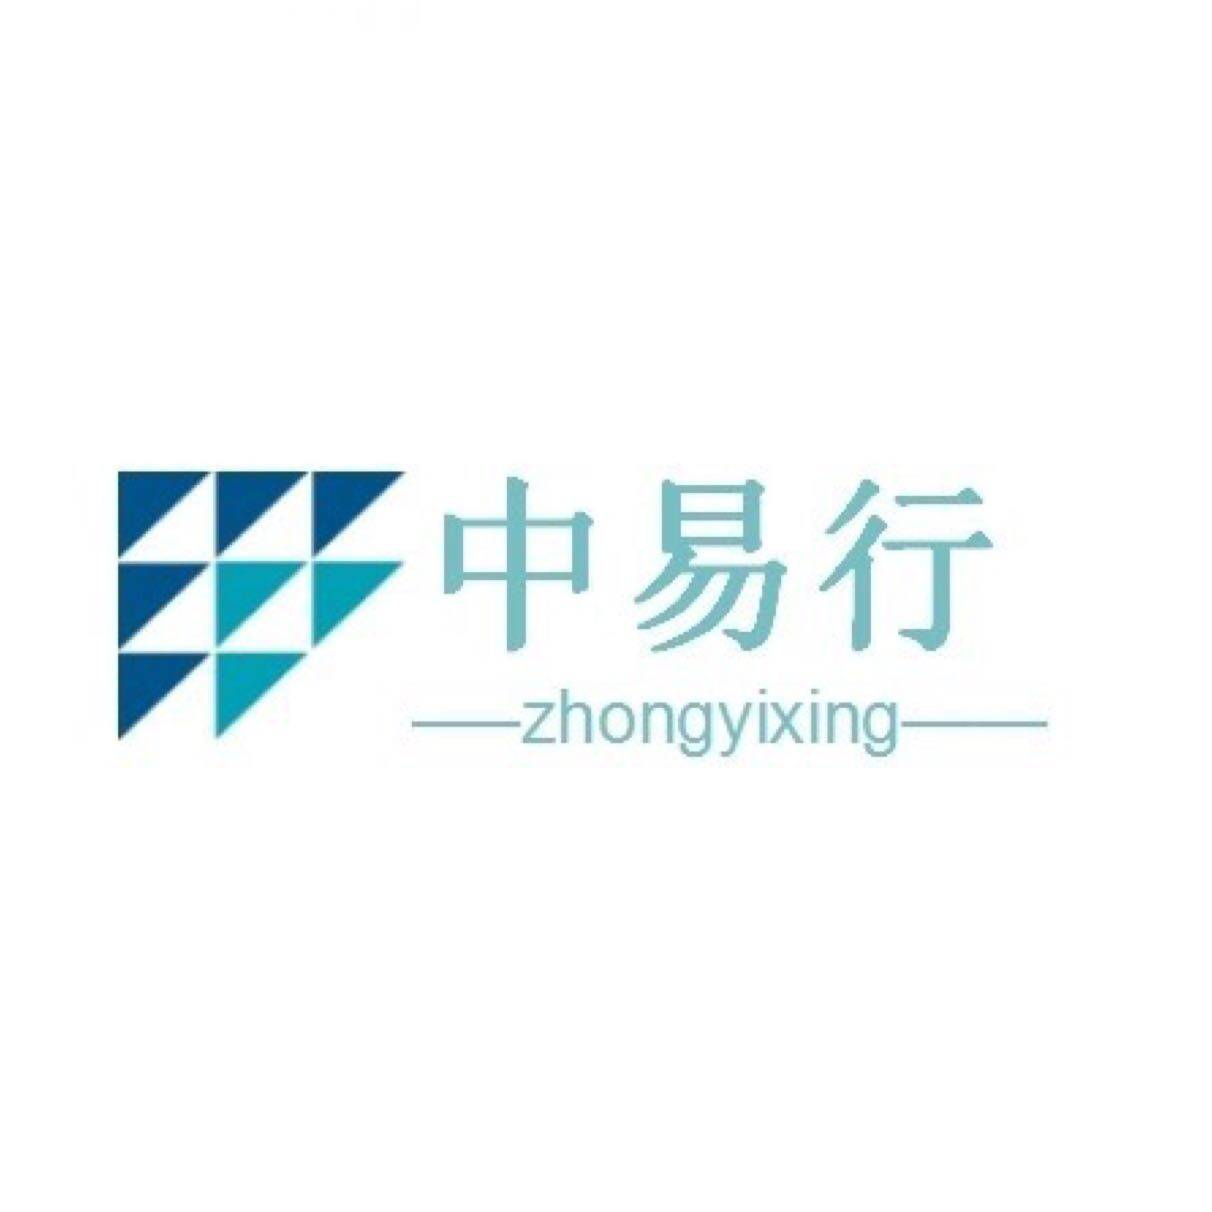 中易行(东莞)供应链管理有限公司logo